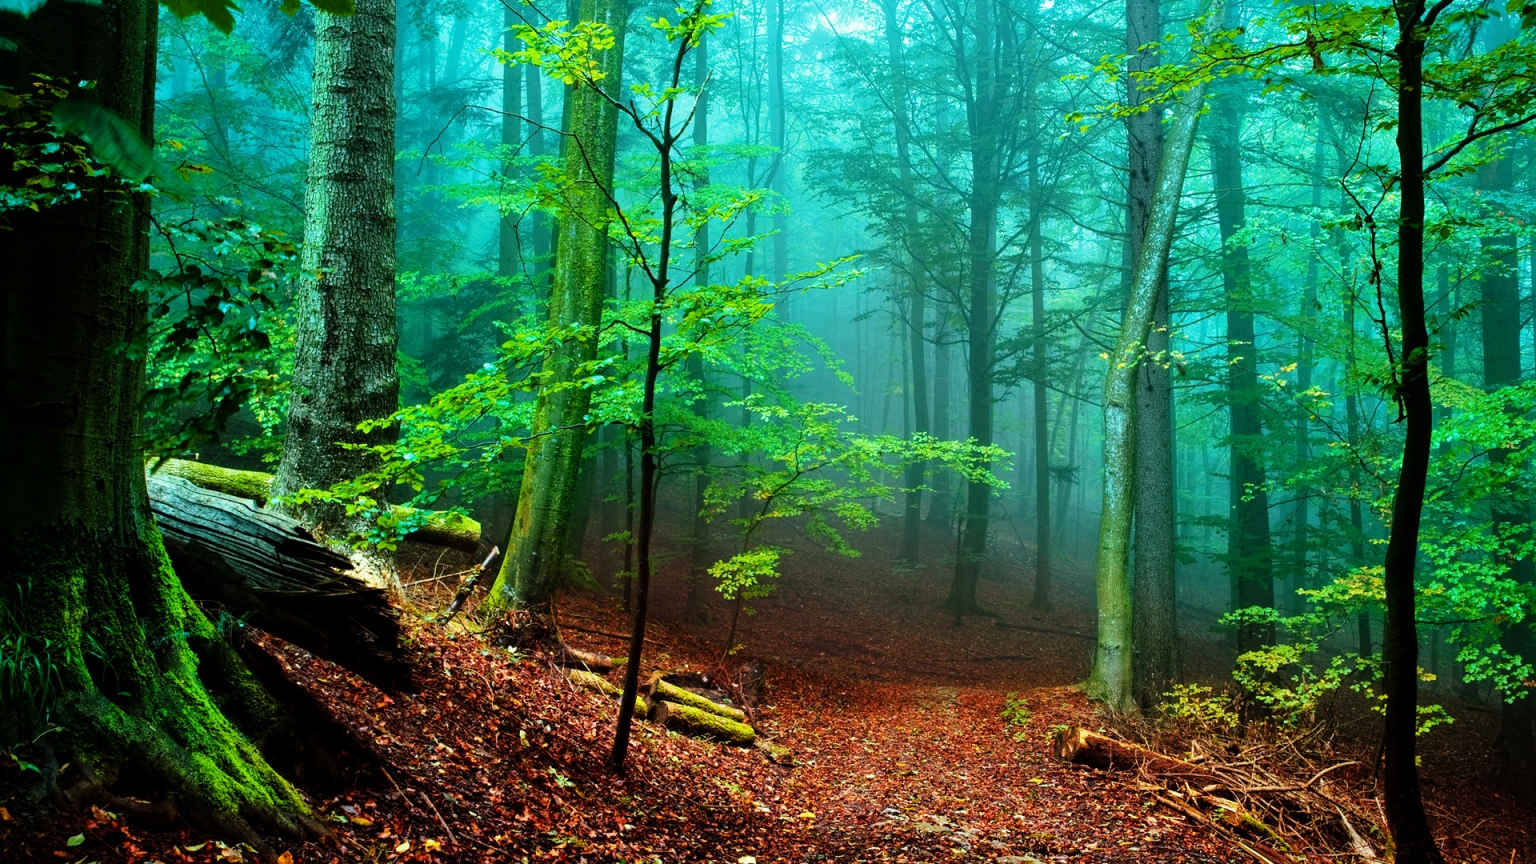 Forest Fog for 1536 x 864 HDTV resolution